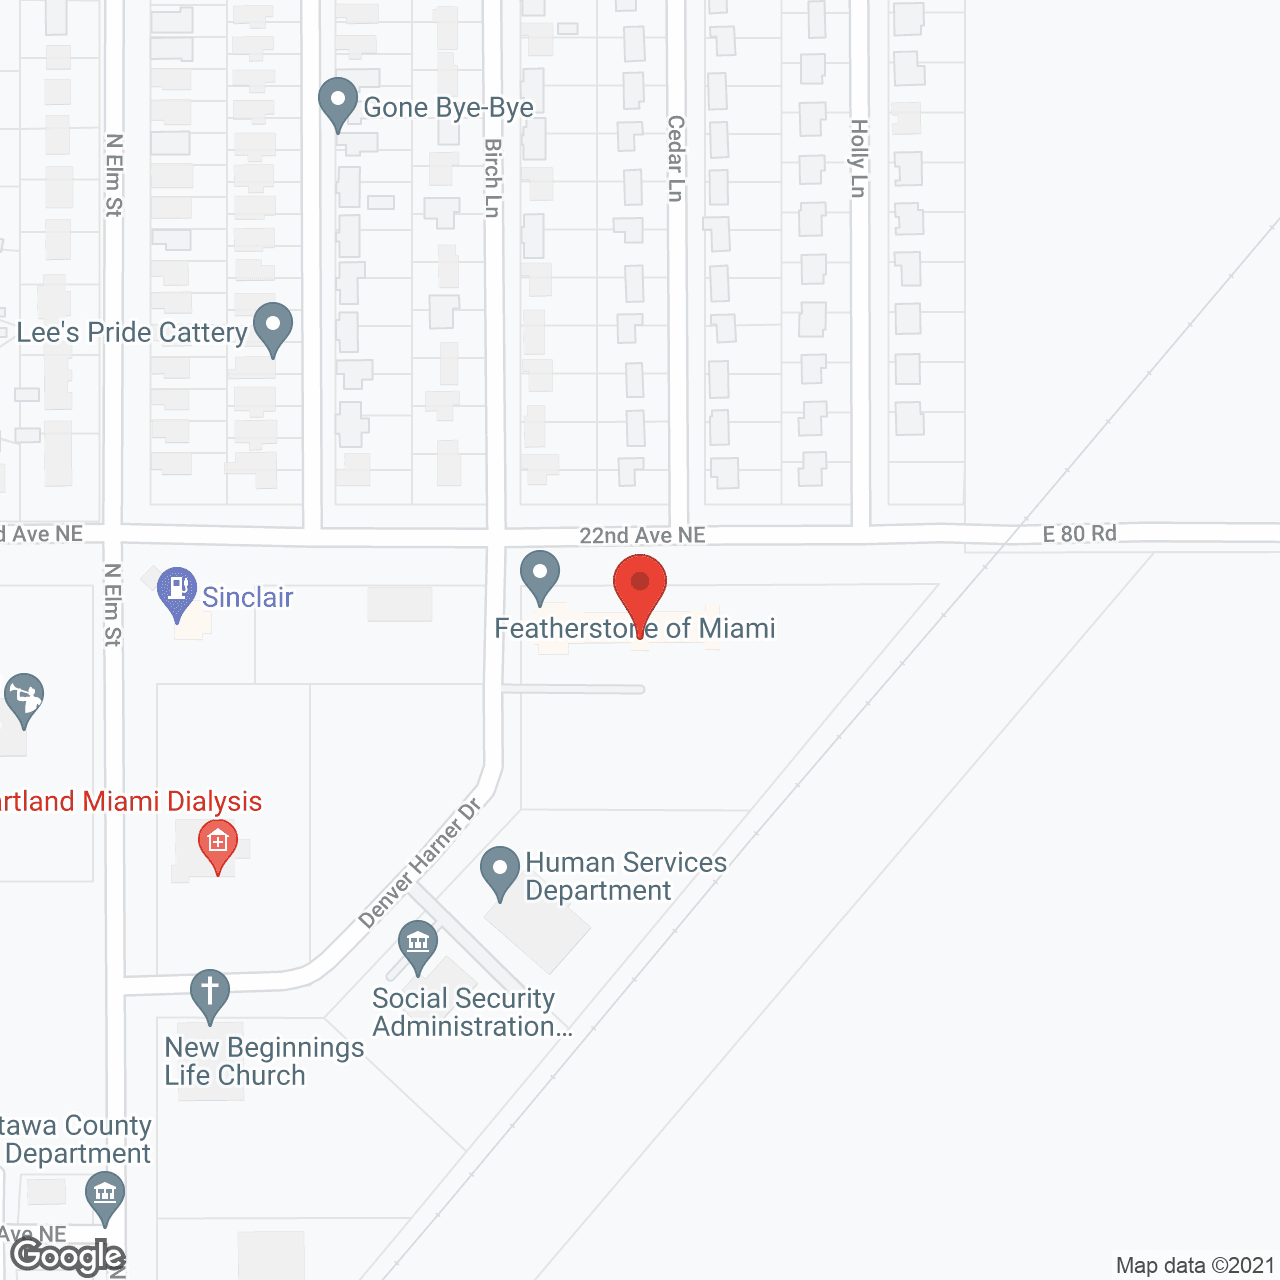 Heartland Plaza of Miami in google map